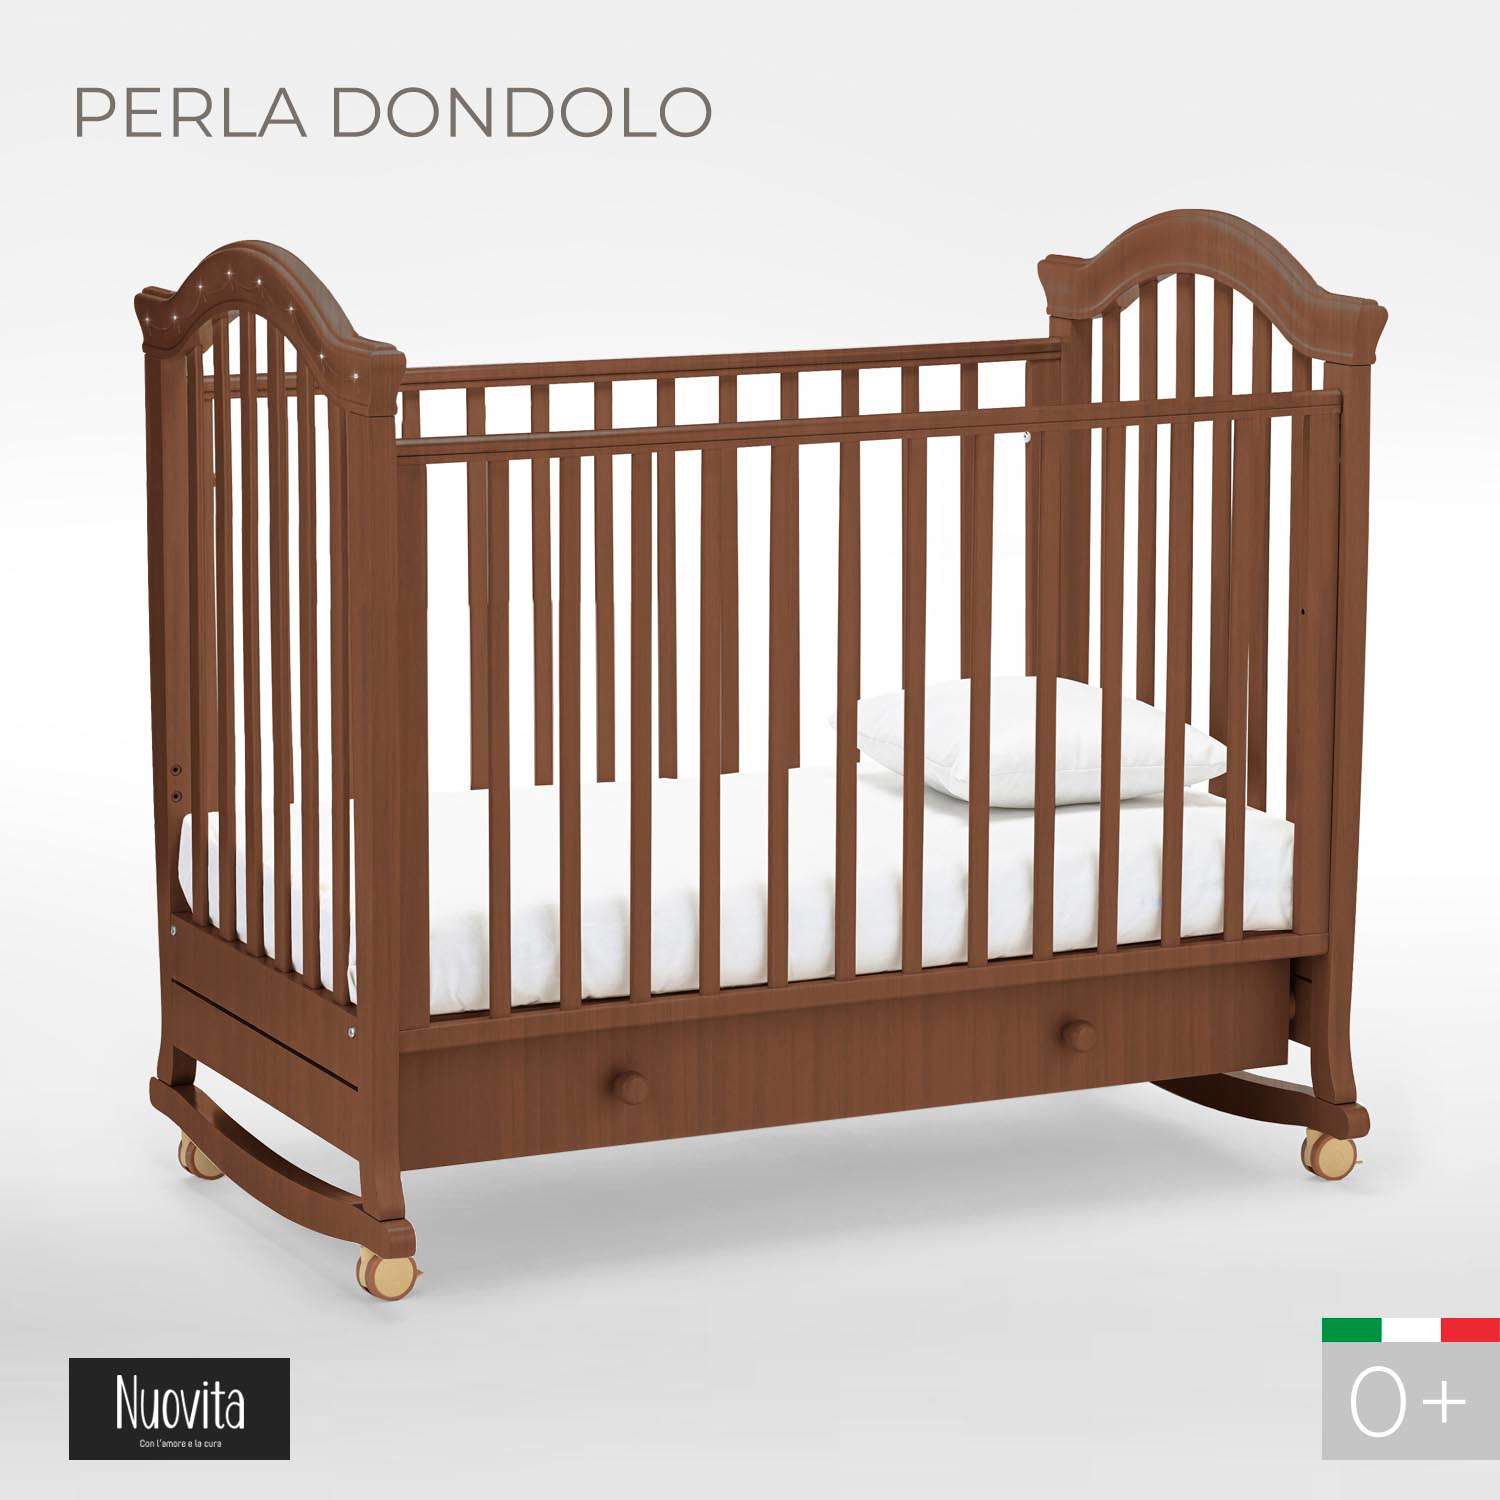 Детская кроватка Nuovita Perla Dondolo прямоугольная, без маятника (темный орех) - фото 2